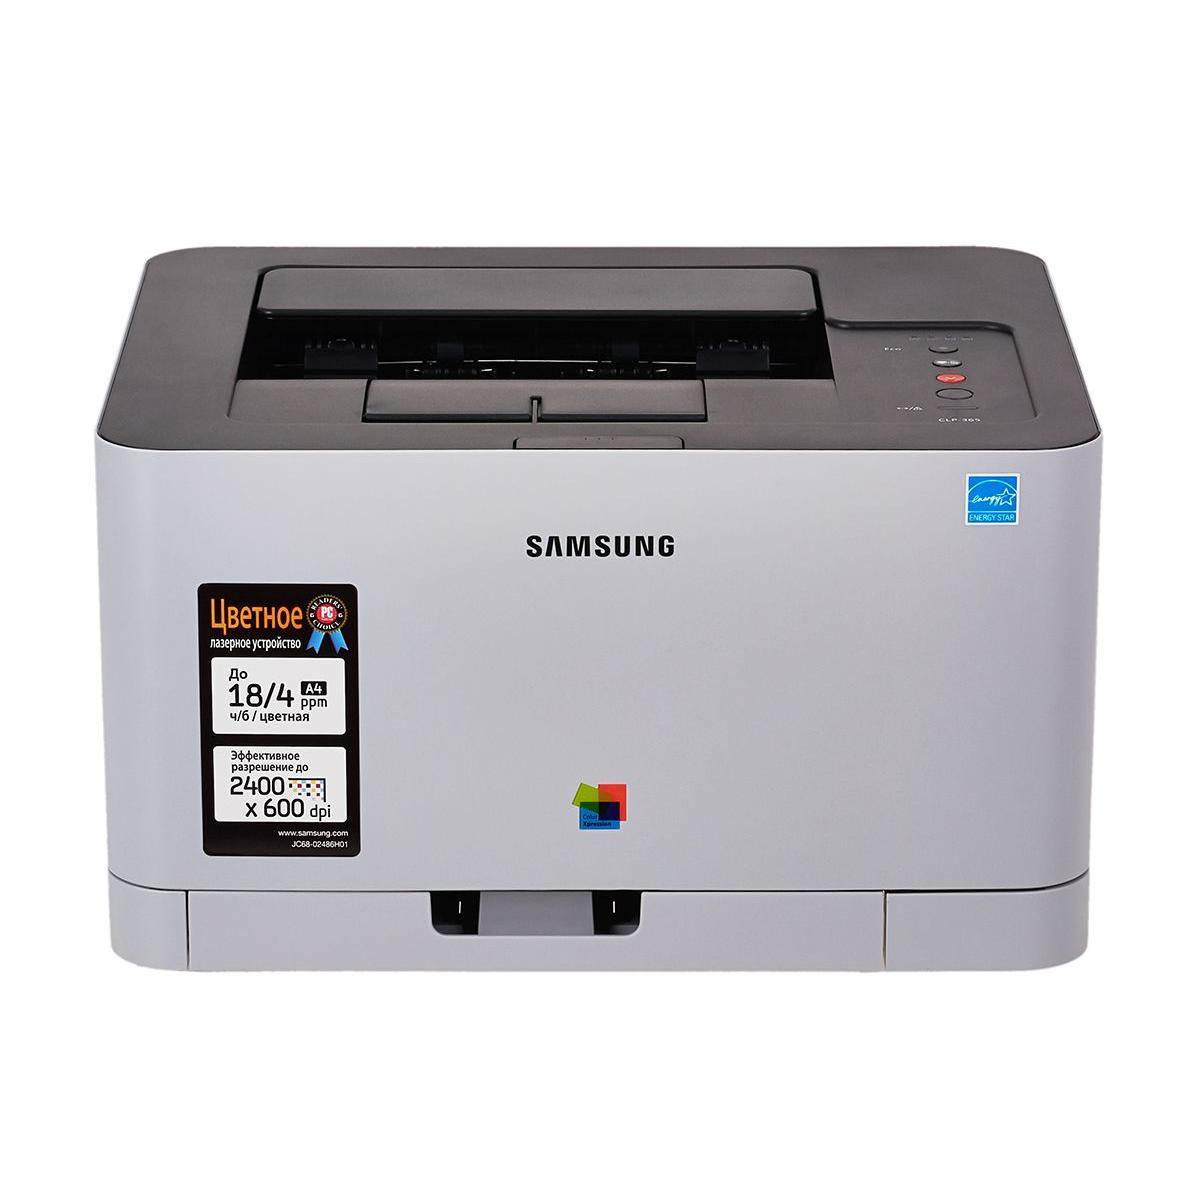 Цветные самсунг. Принтер Samsung CLP-365. Принтер лазерный цветной самсунг CLP-365. Цветной лазерный принтер Samsung CLP 365. Samsung CLP 6000.